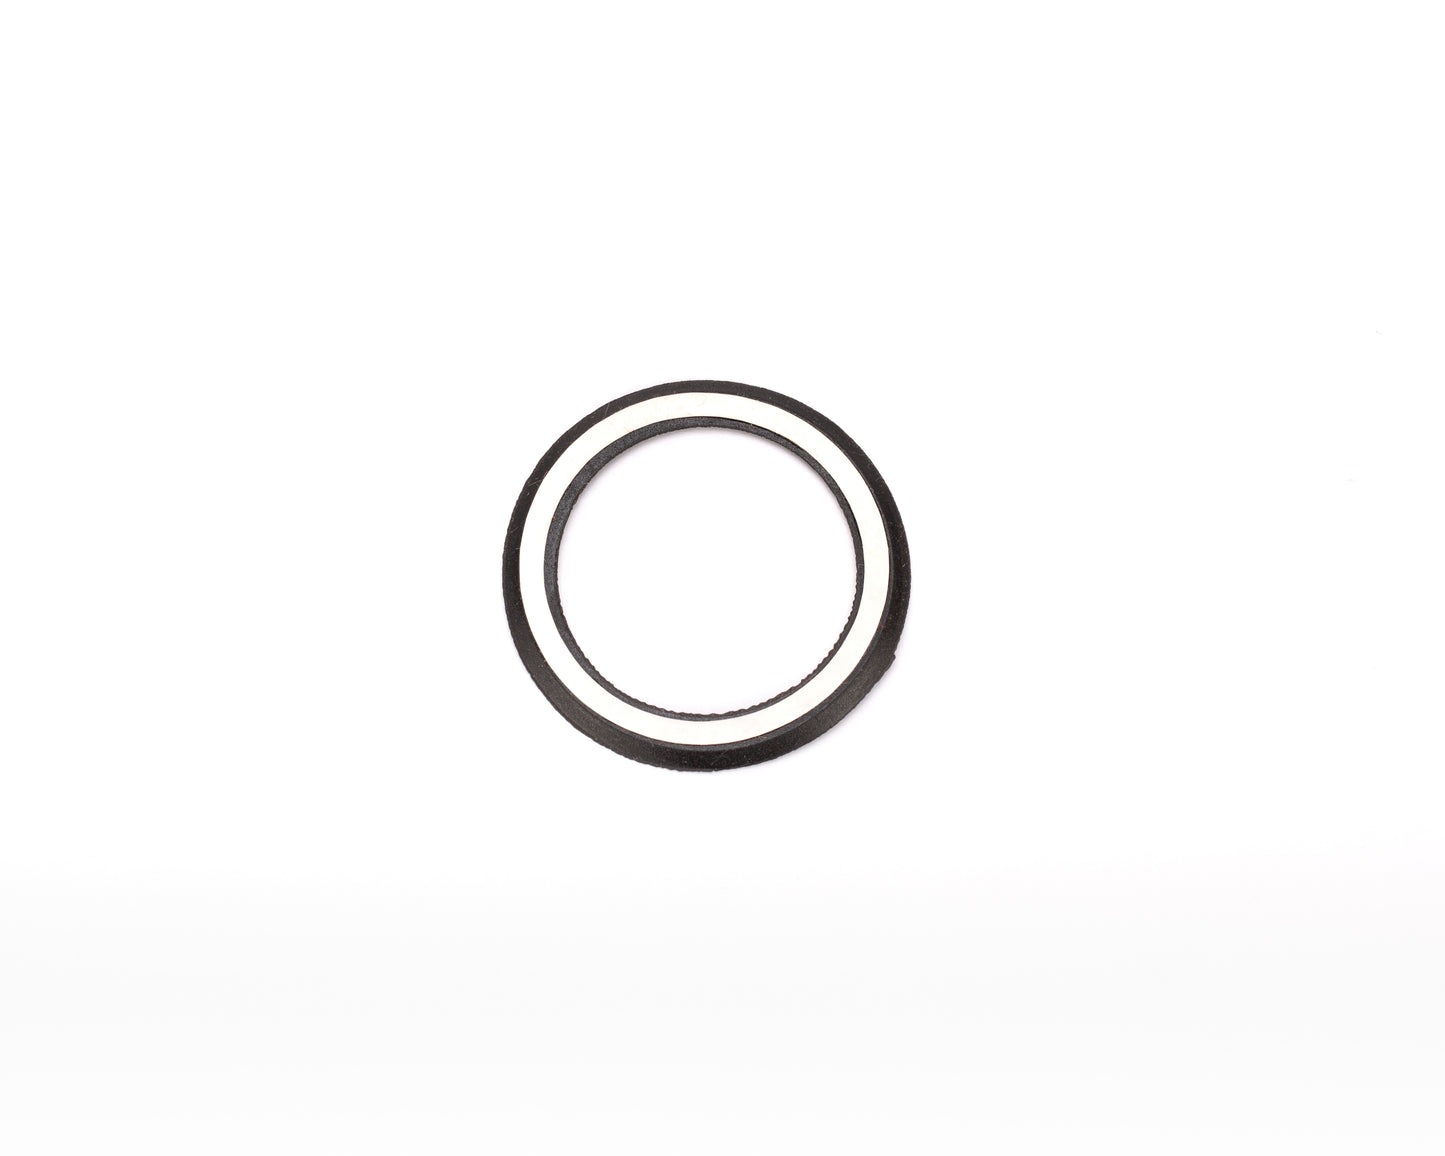 Headset Bearing Seal Ring 1-1/4" w/opkge